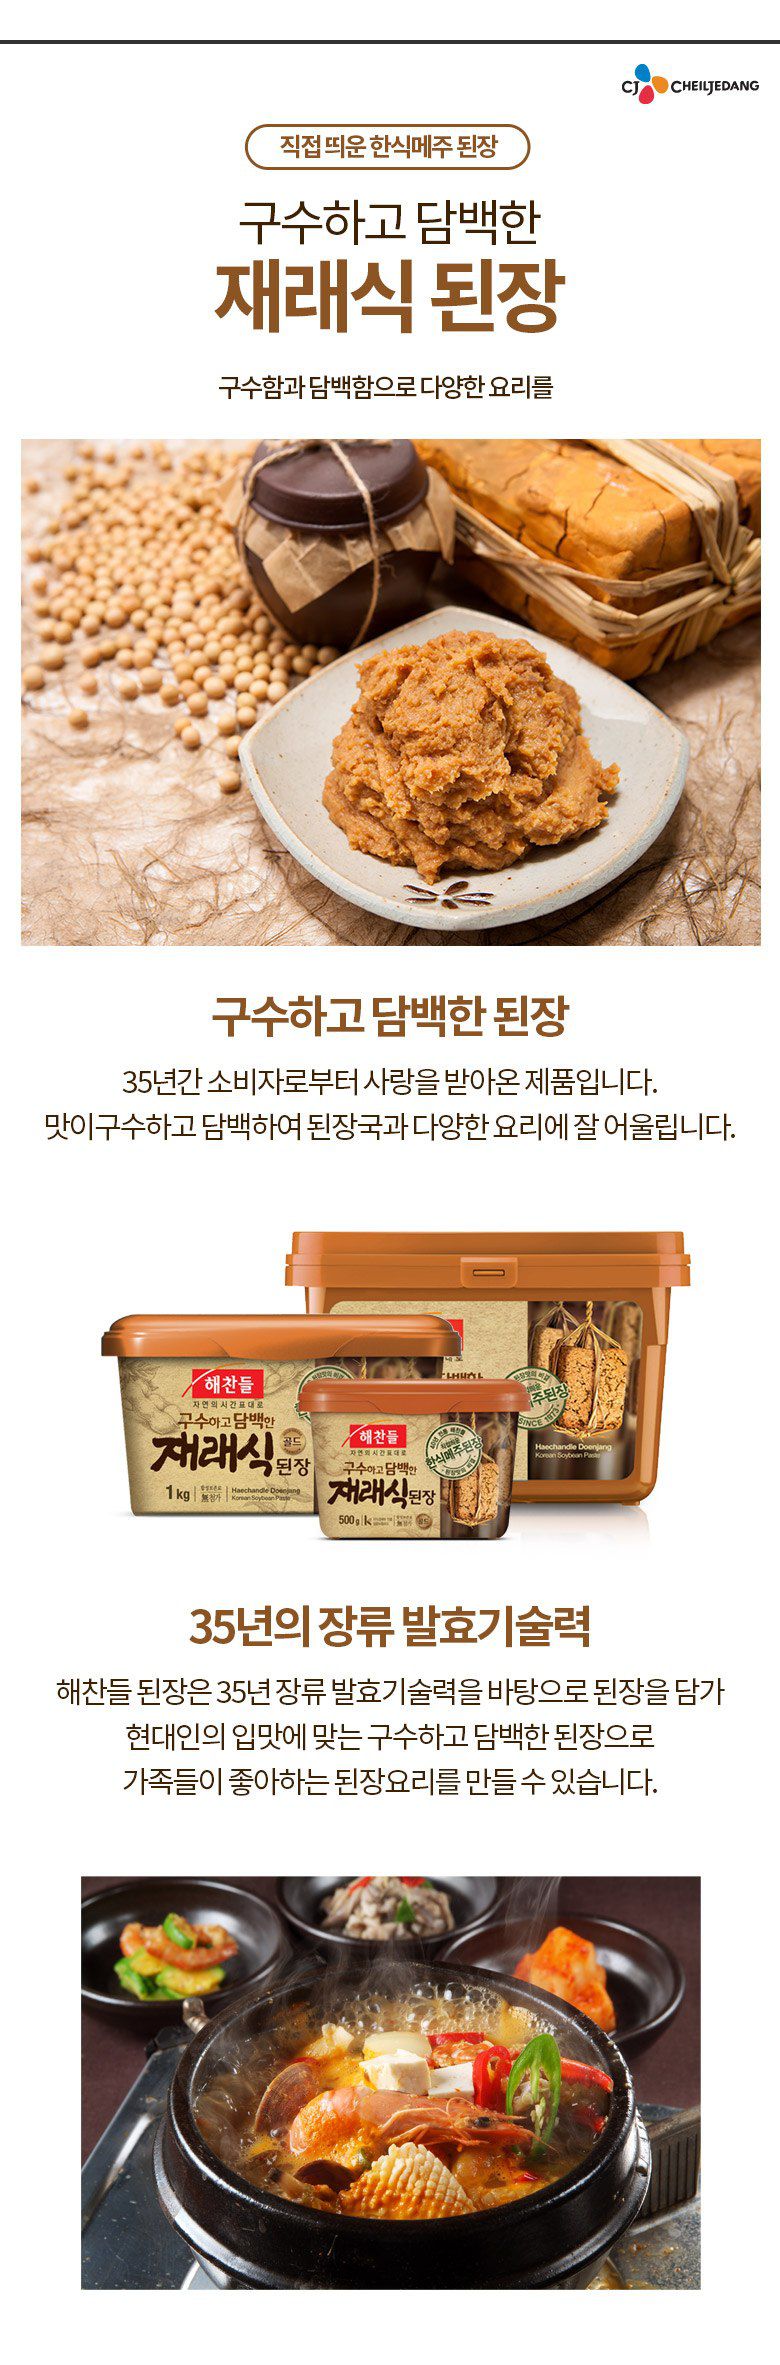 韓國食品-[CJ] 해찬들 재래식된장 1kg